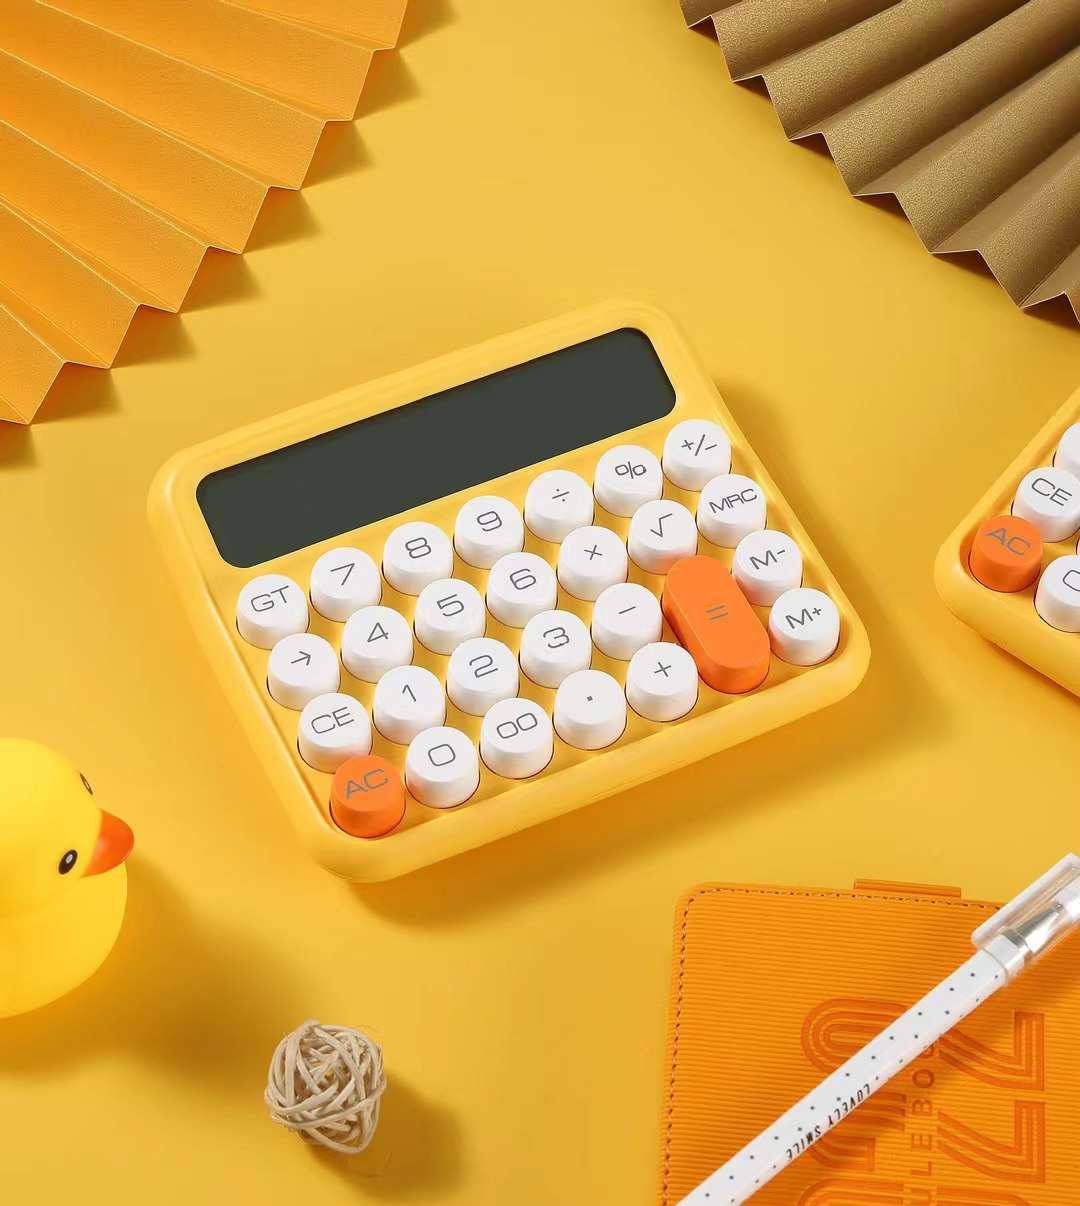 Yam Calculator Yellow